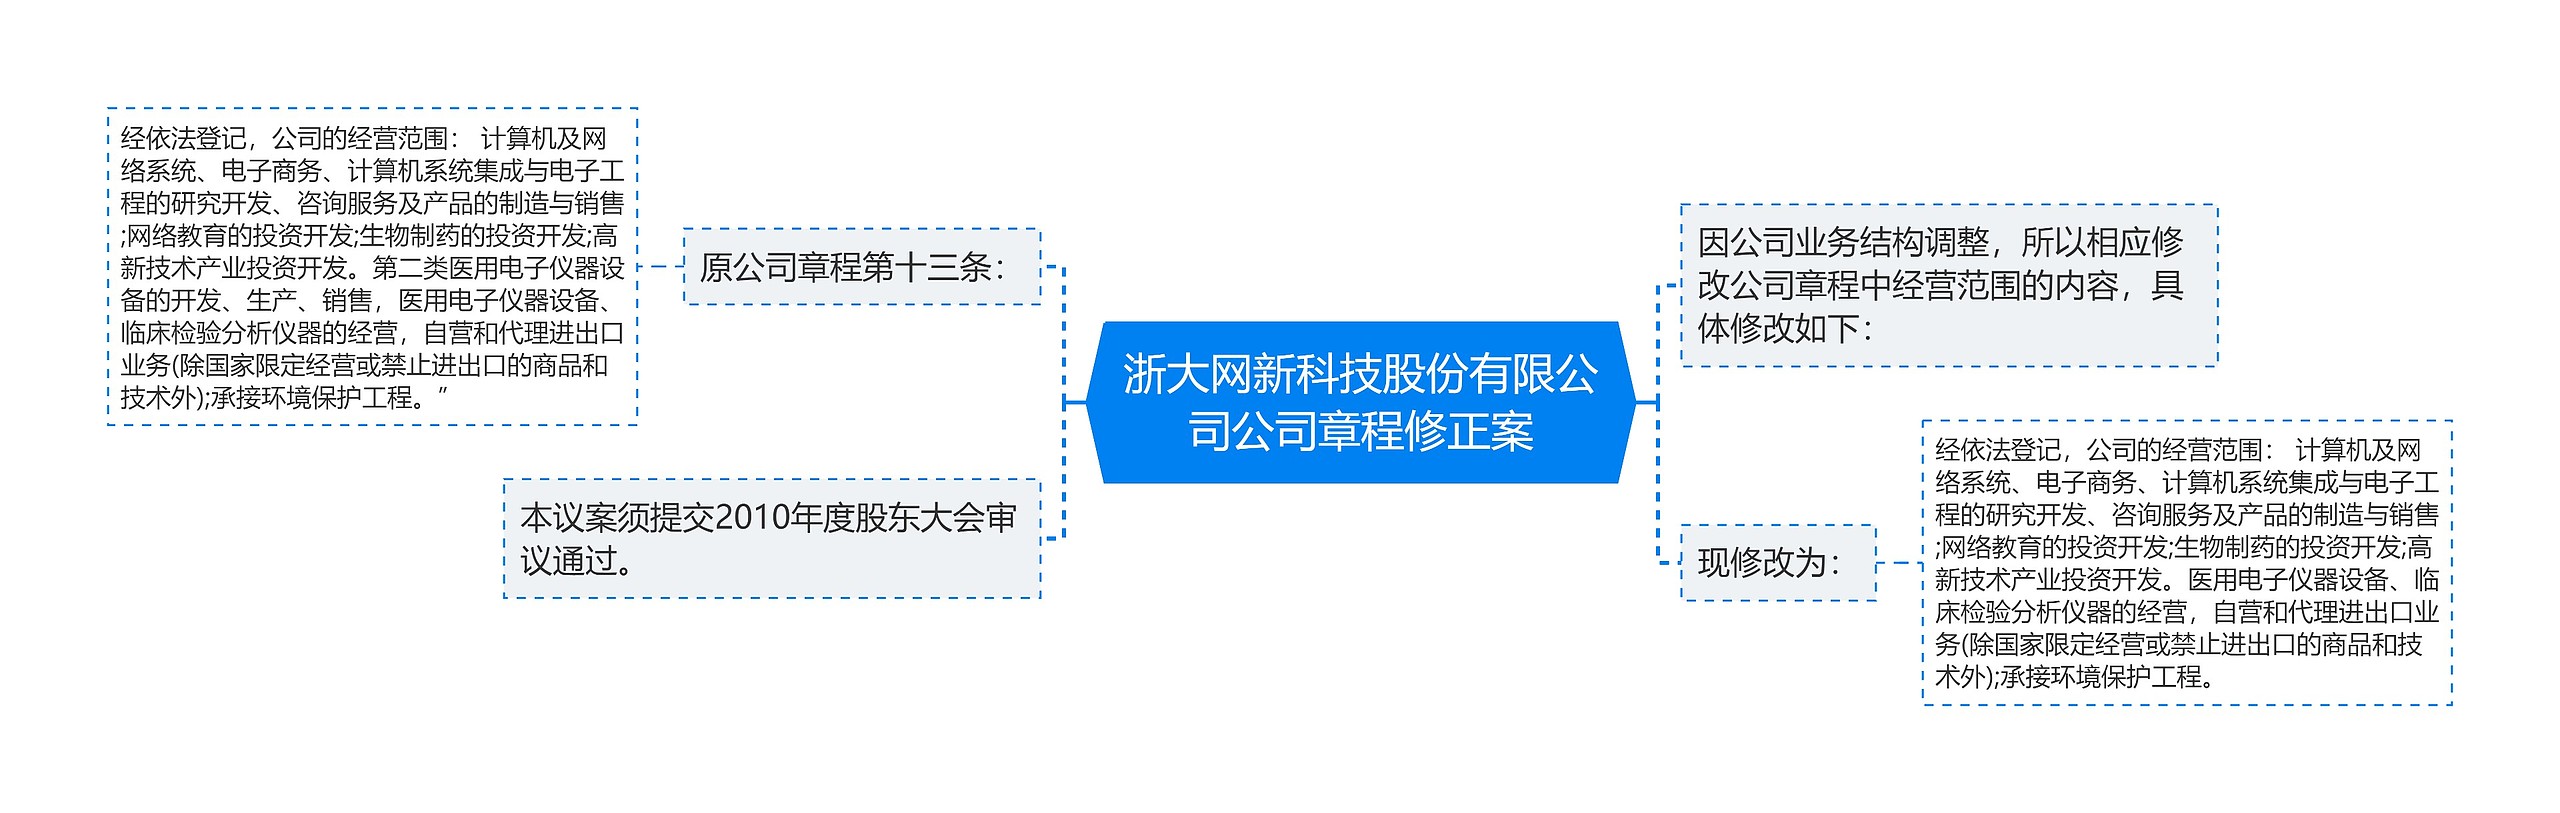 浙大网新科技股份有限公司公司章程修正案